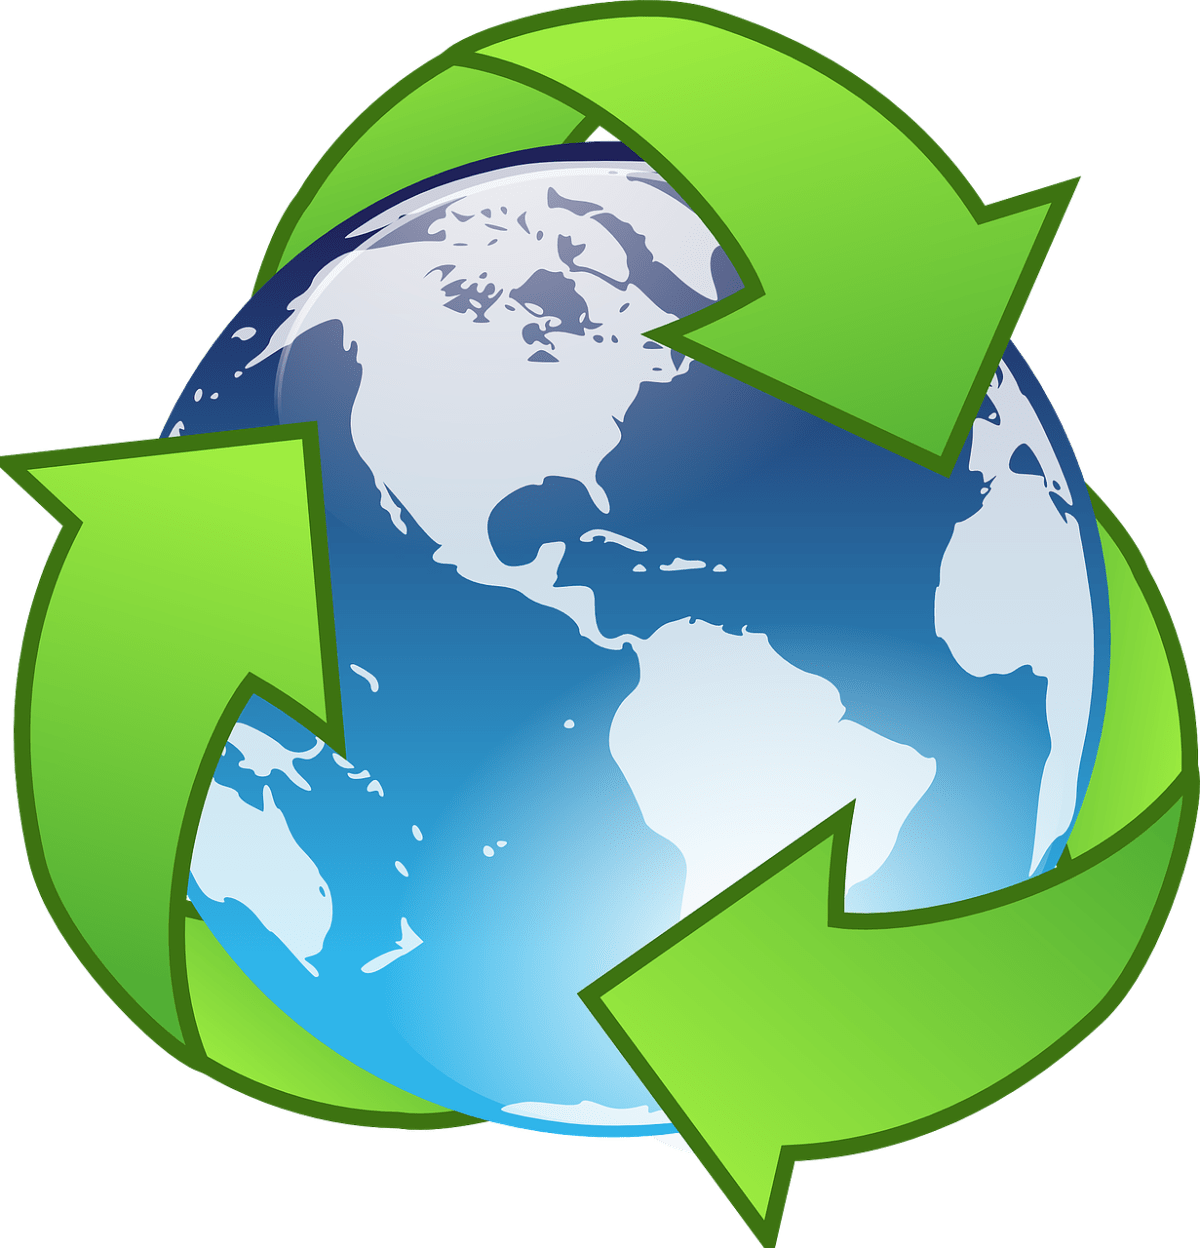 Internacionalización y transición ecológica